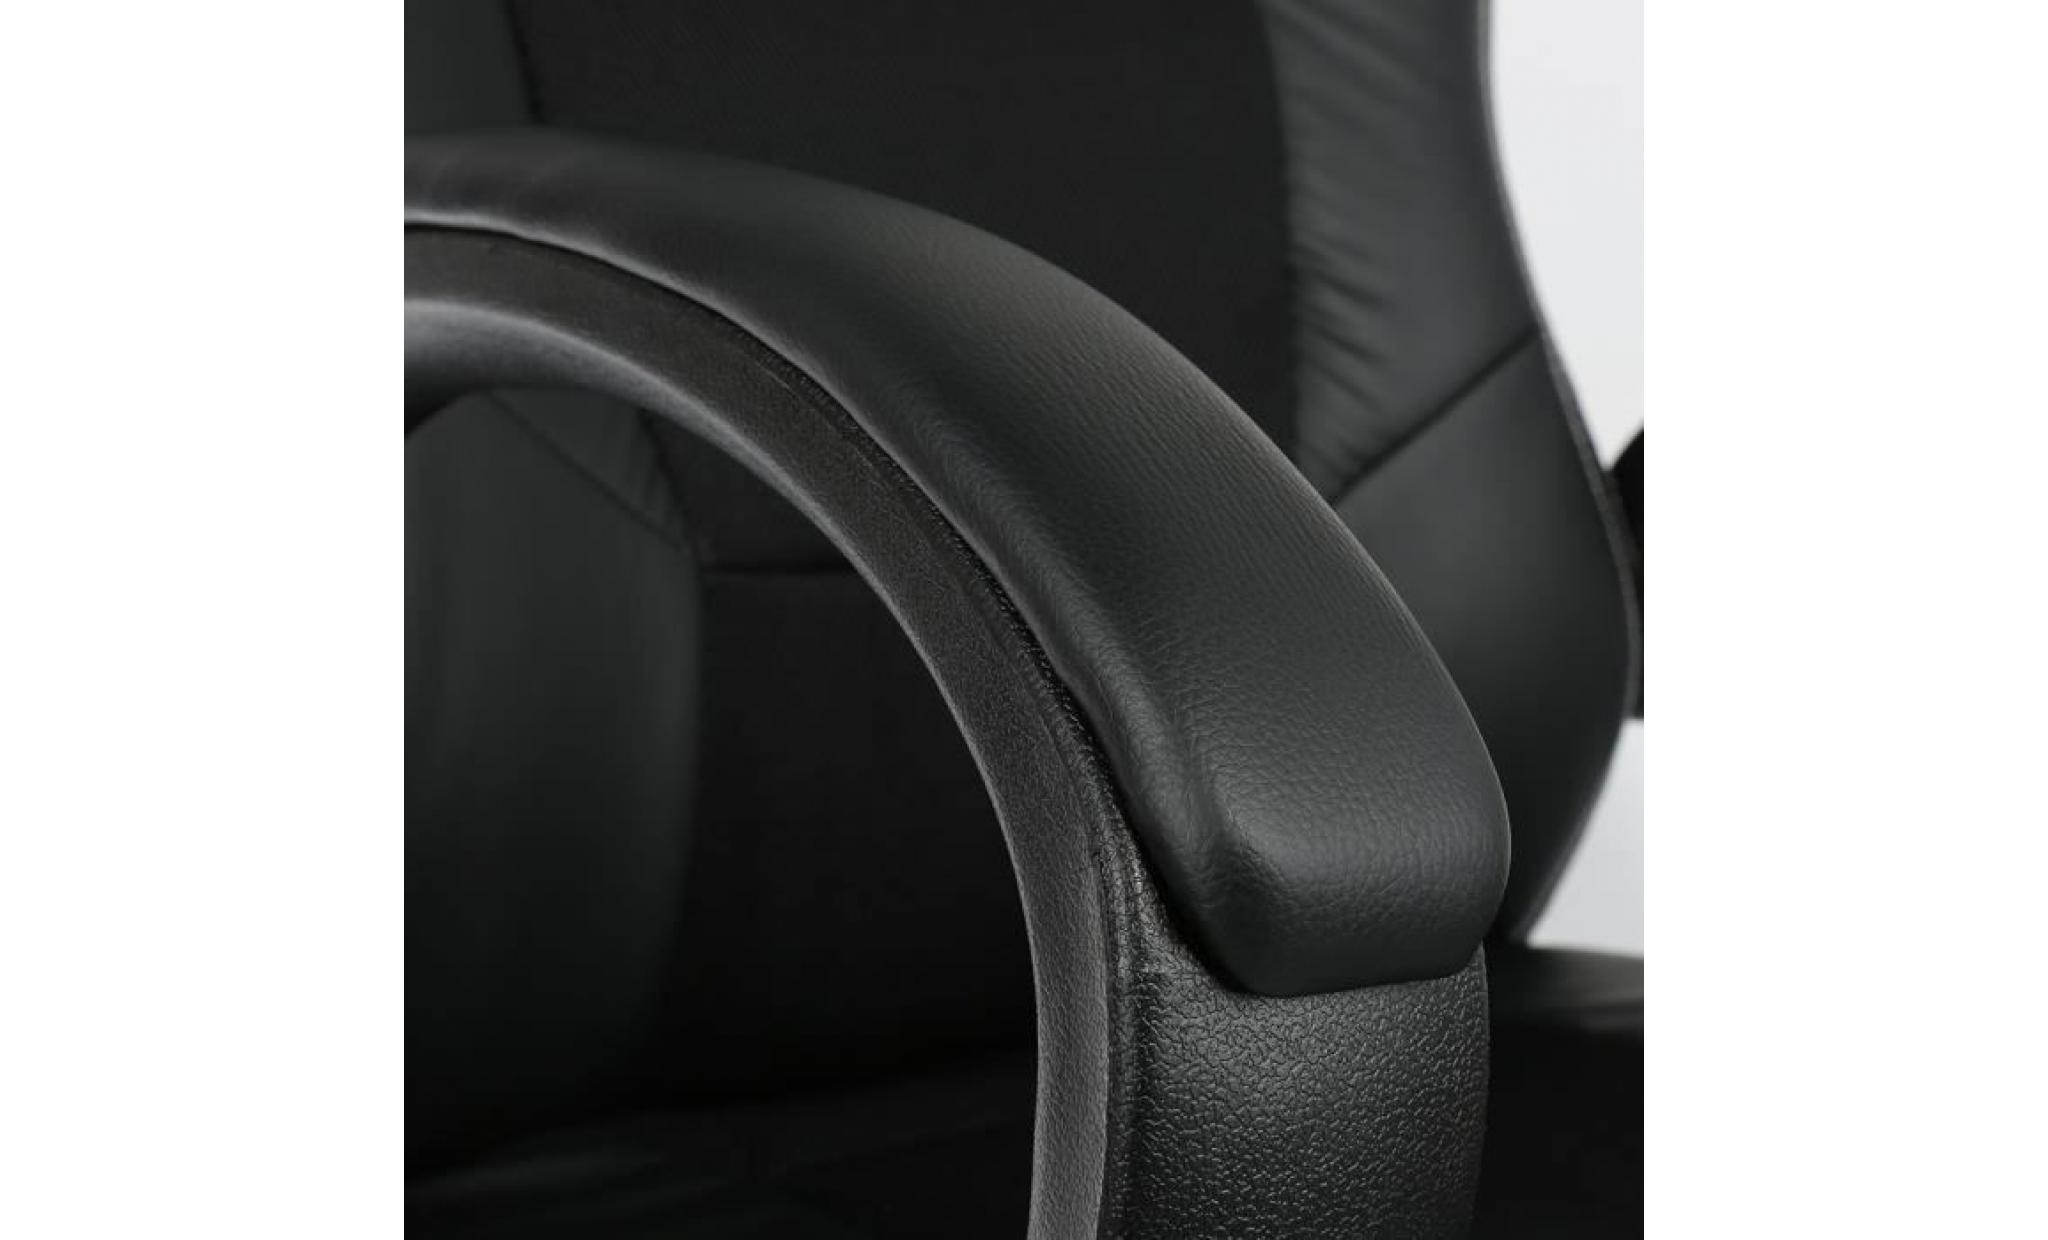 chaise de bureau fauteuil en similicuir racing ergonomique accoudoirs rembourrés noir pas cher